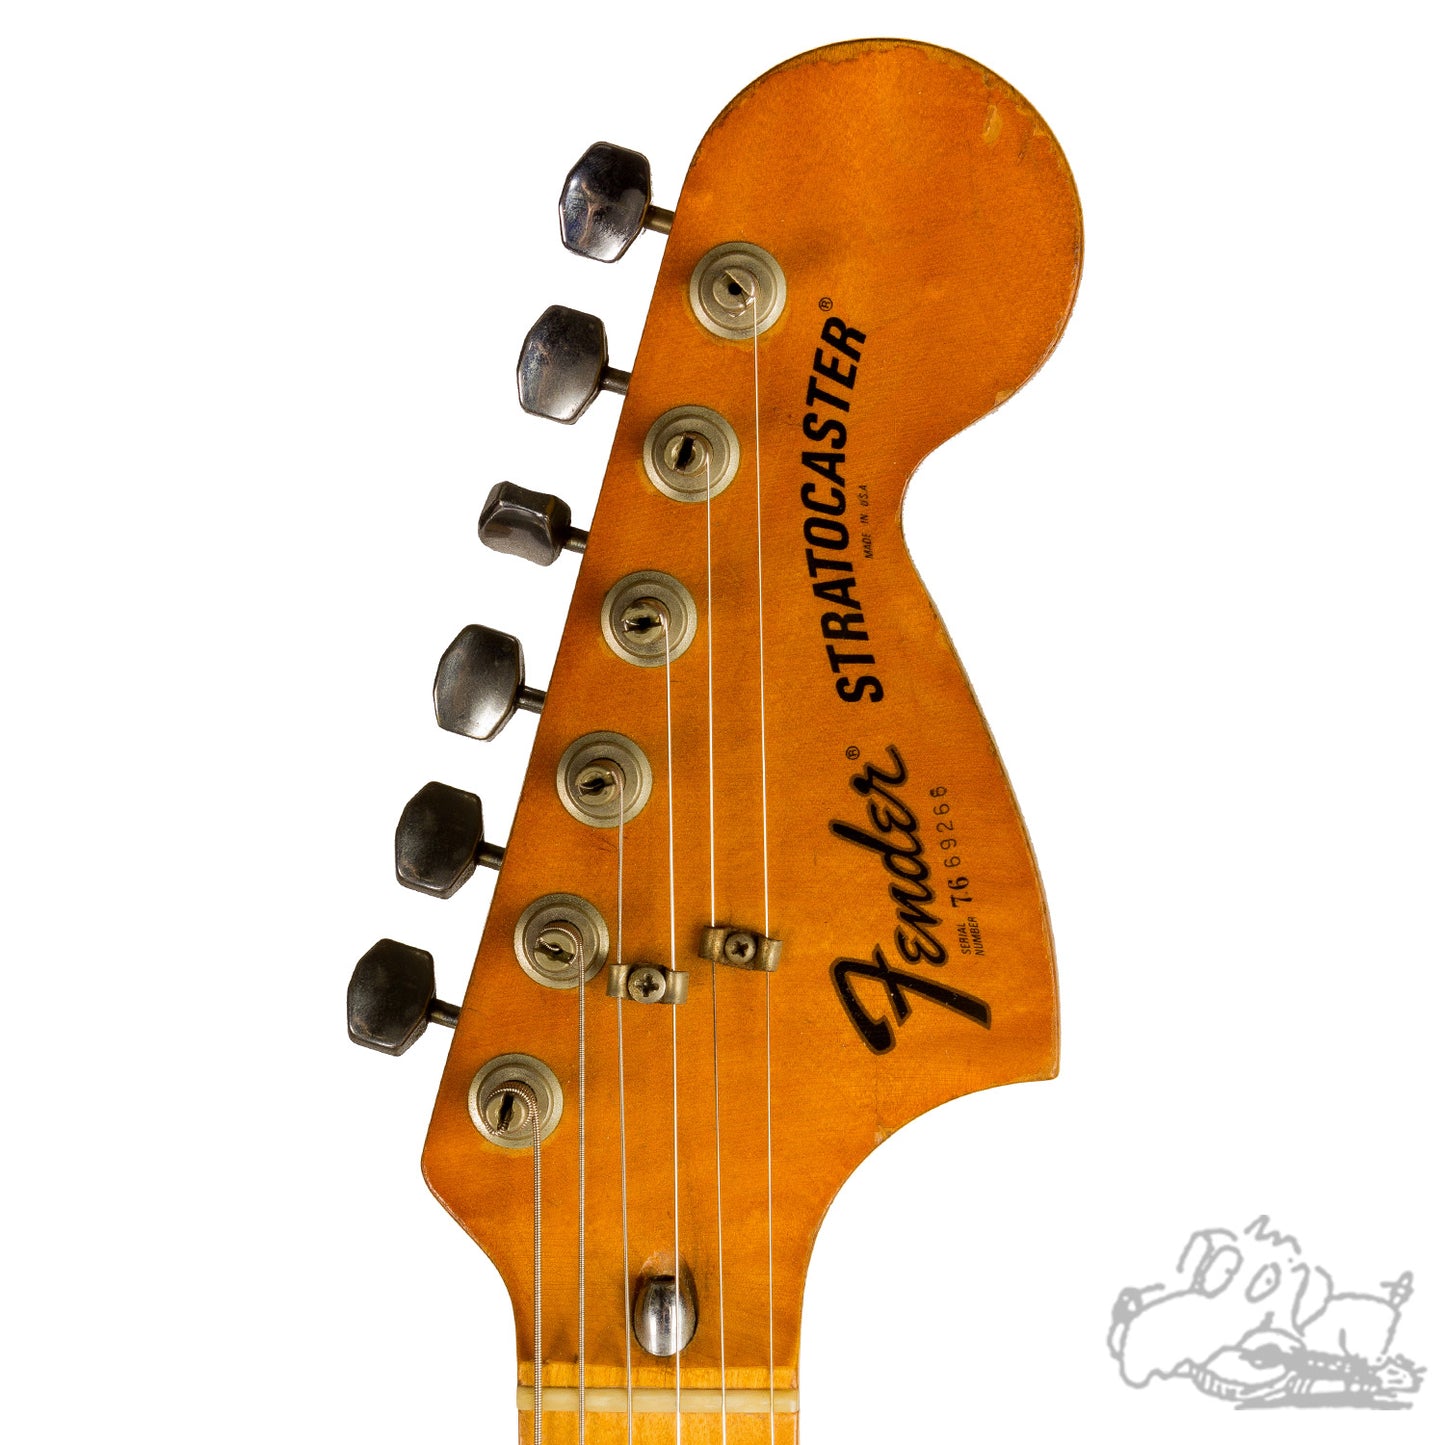 1976 Fender Stratocaster Hardtail